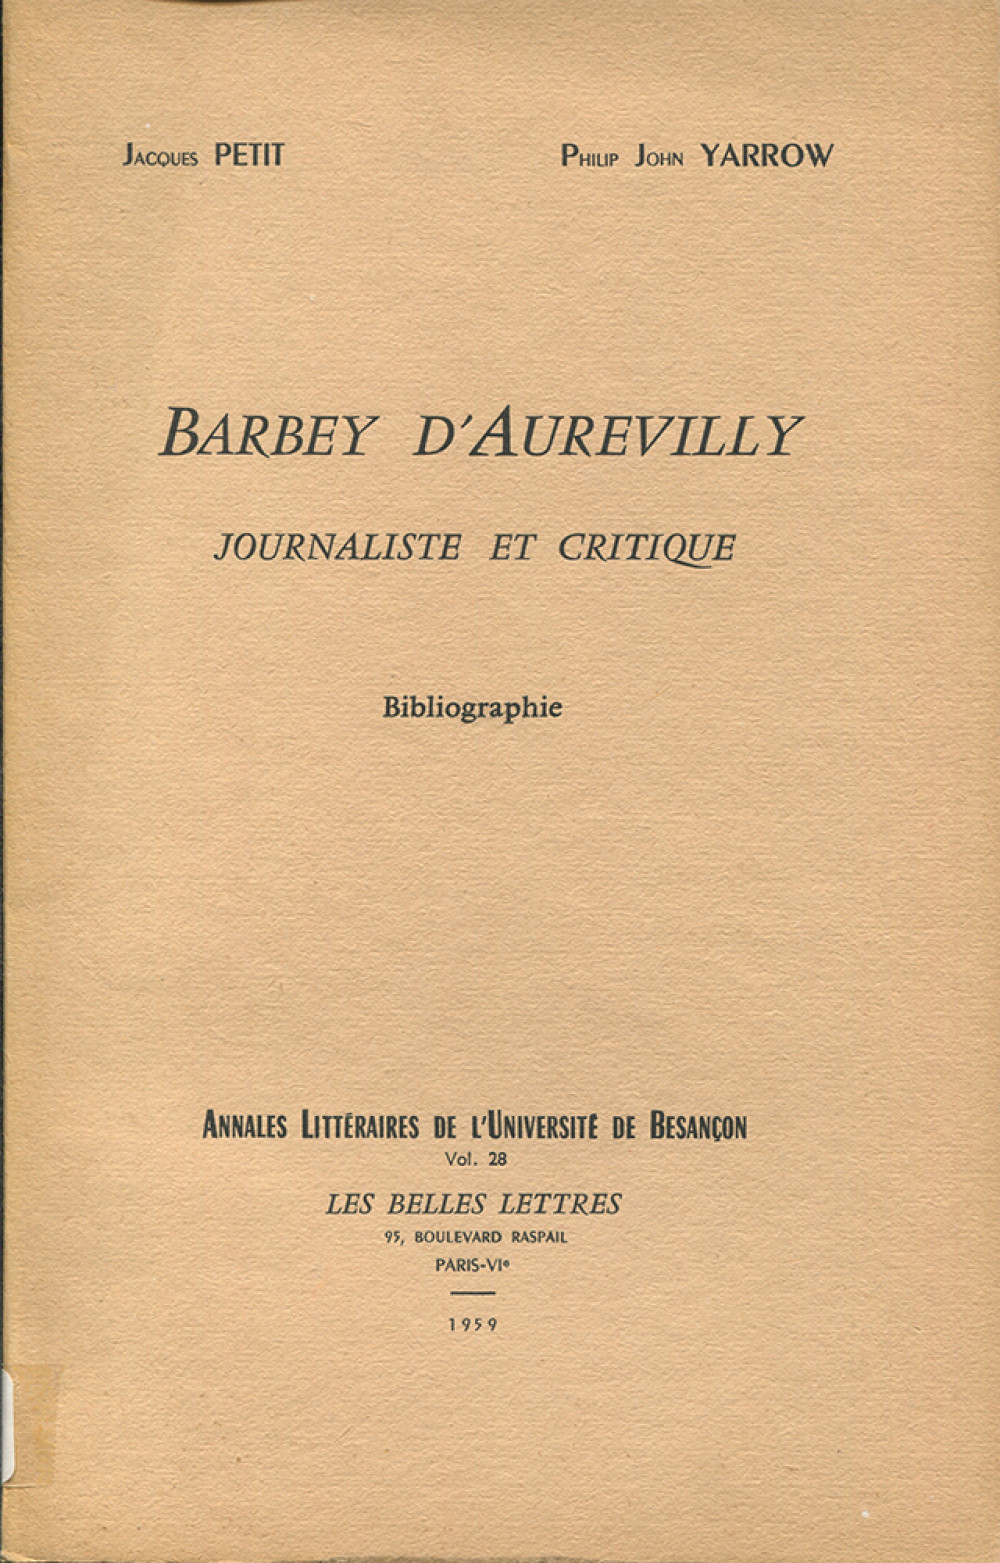 Barbey d'Aurevilly. Journaliste et critique (Bibliographie)